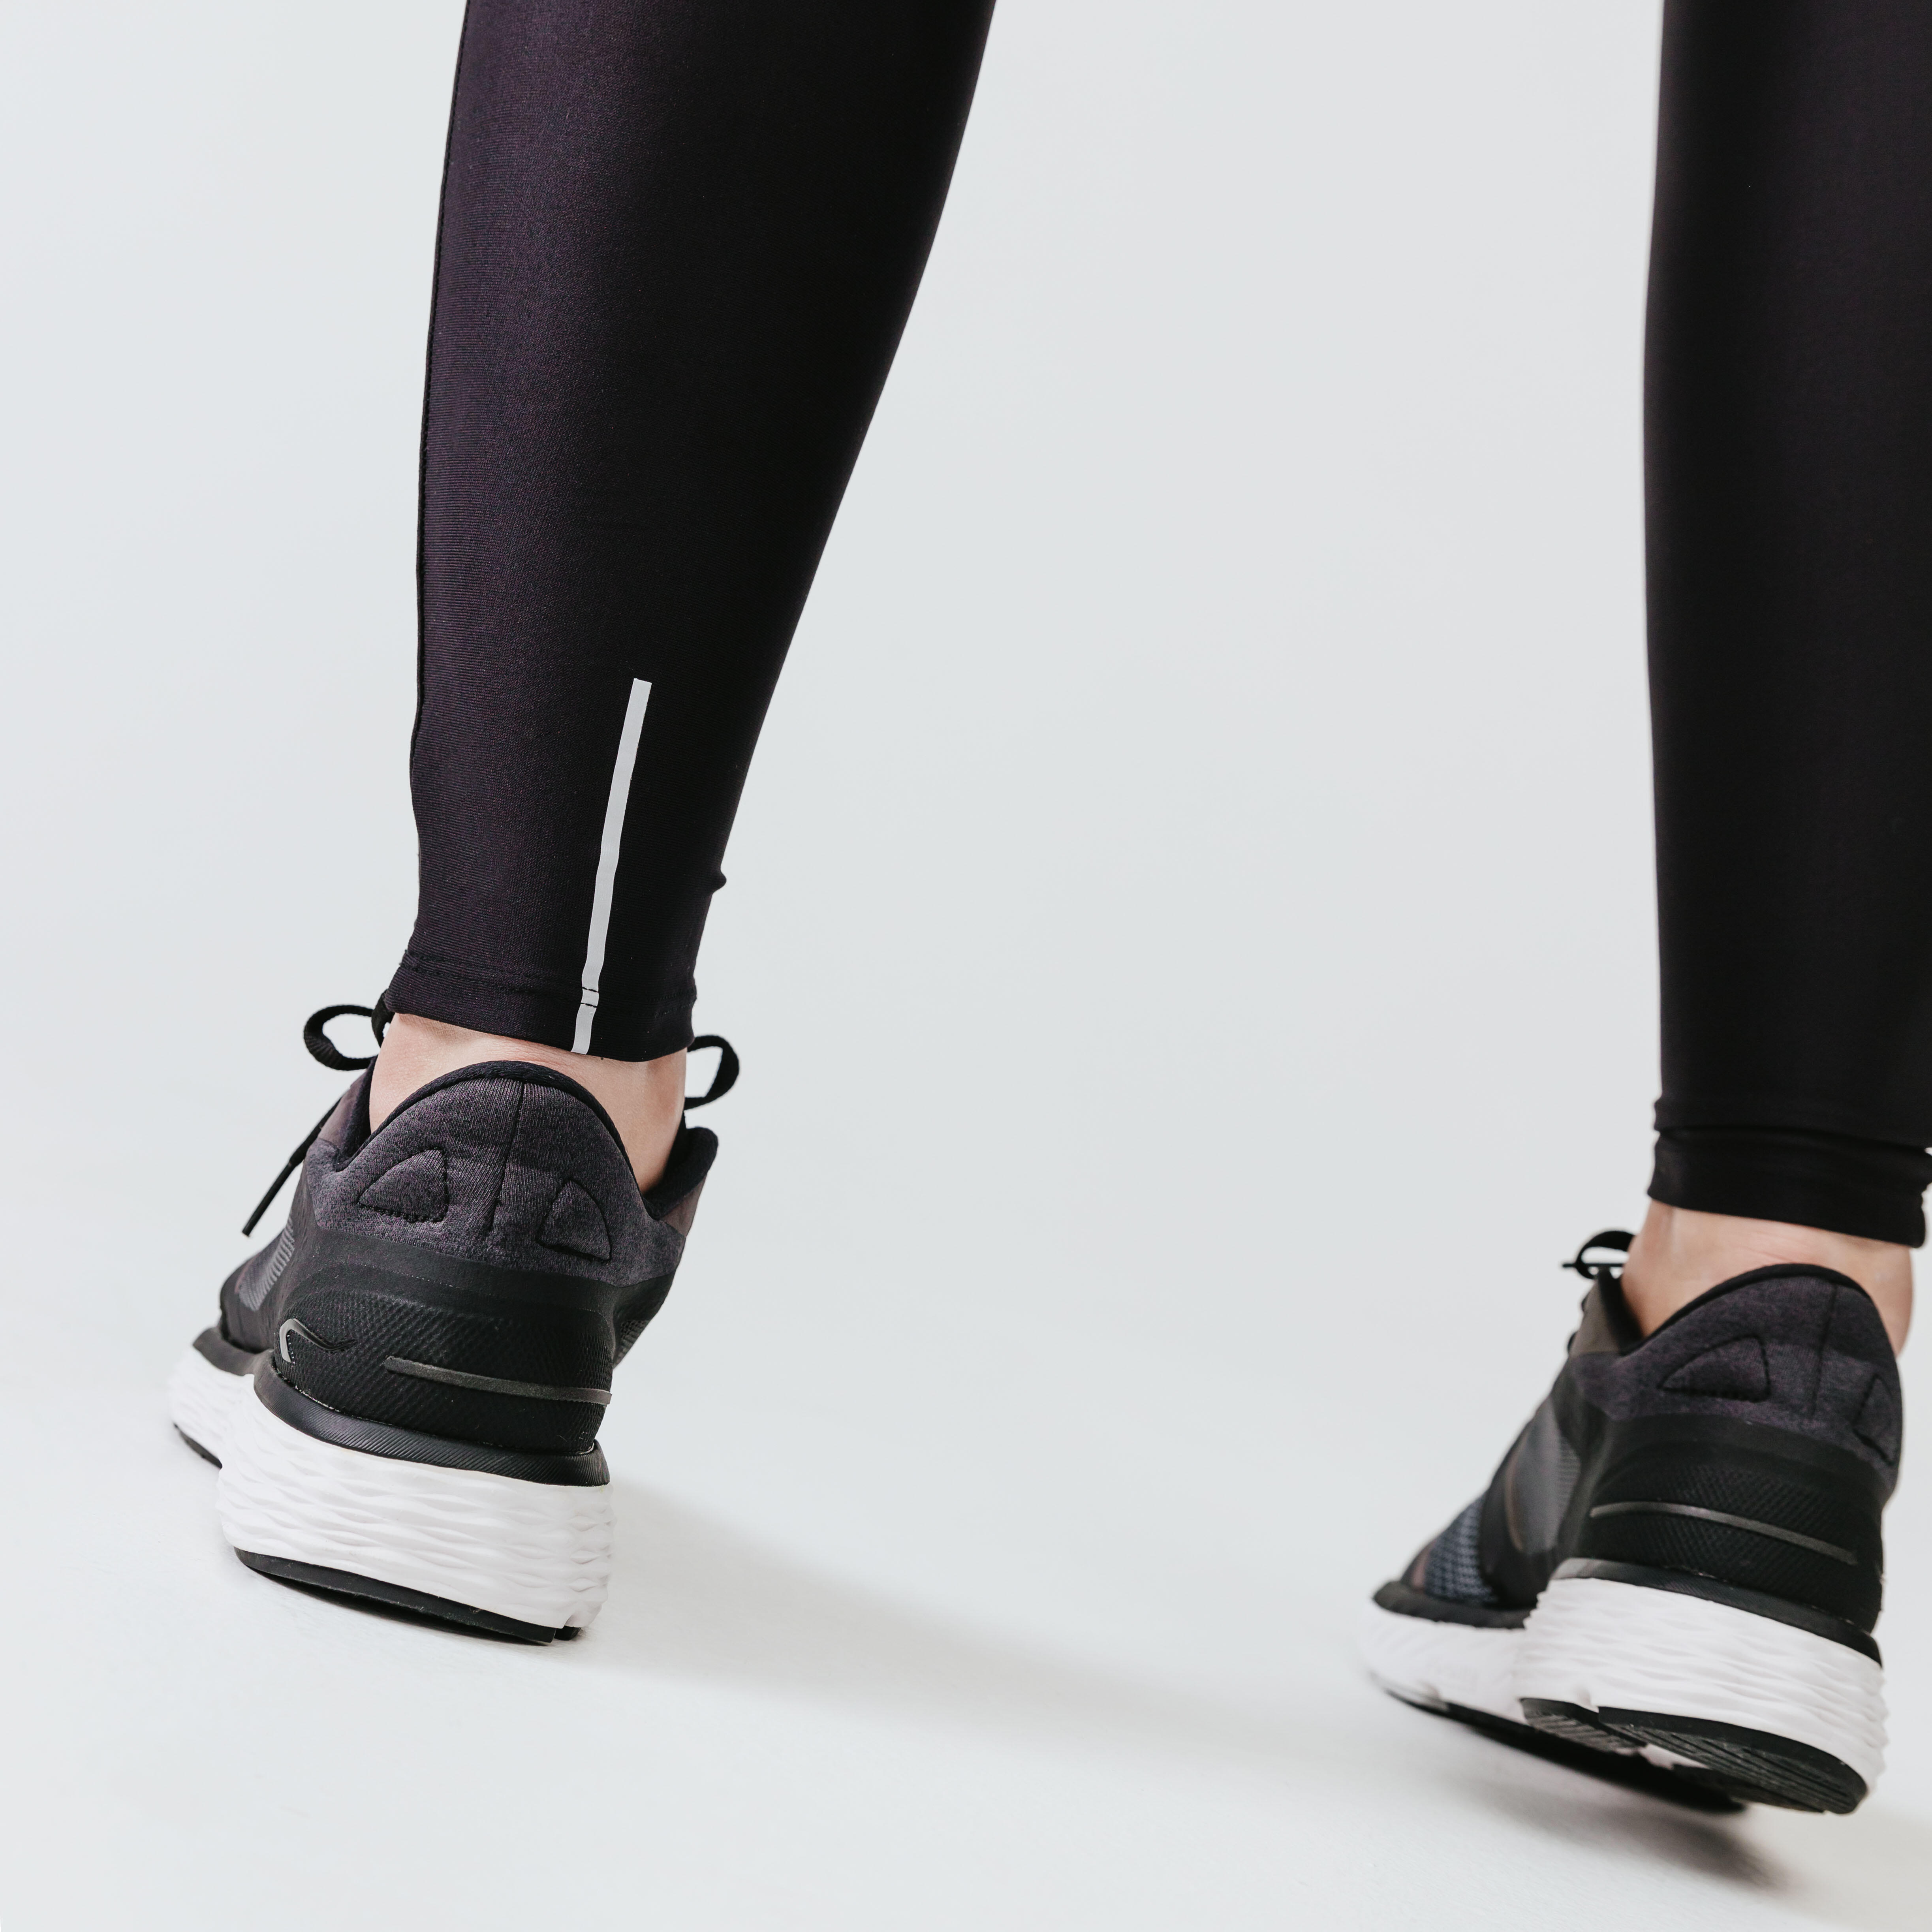 Buy Women's Running Long Leggings Dry - Black Online